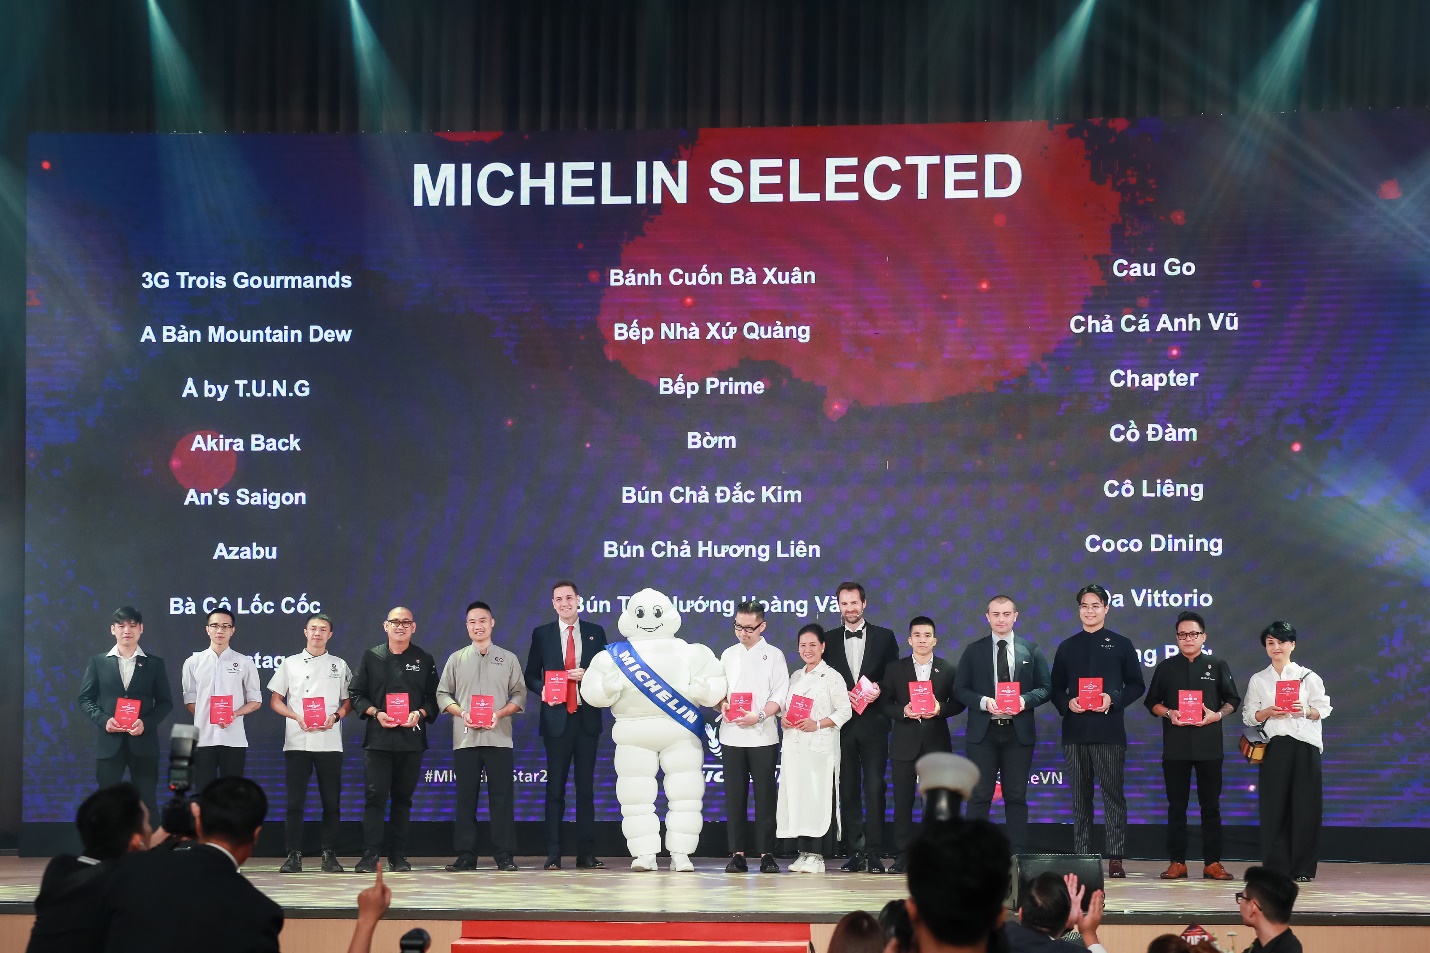 Thương hiệu Minh Long vinh hạnh đồng hành với Michelin Guide trong Lễ Công bố danh sách các nhà hàng ở Hà Hội và TP HCM được lựa chọn, tại Hà Nội.